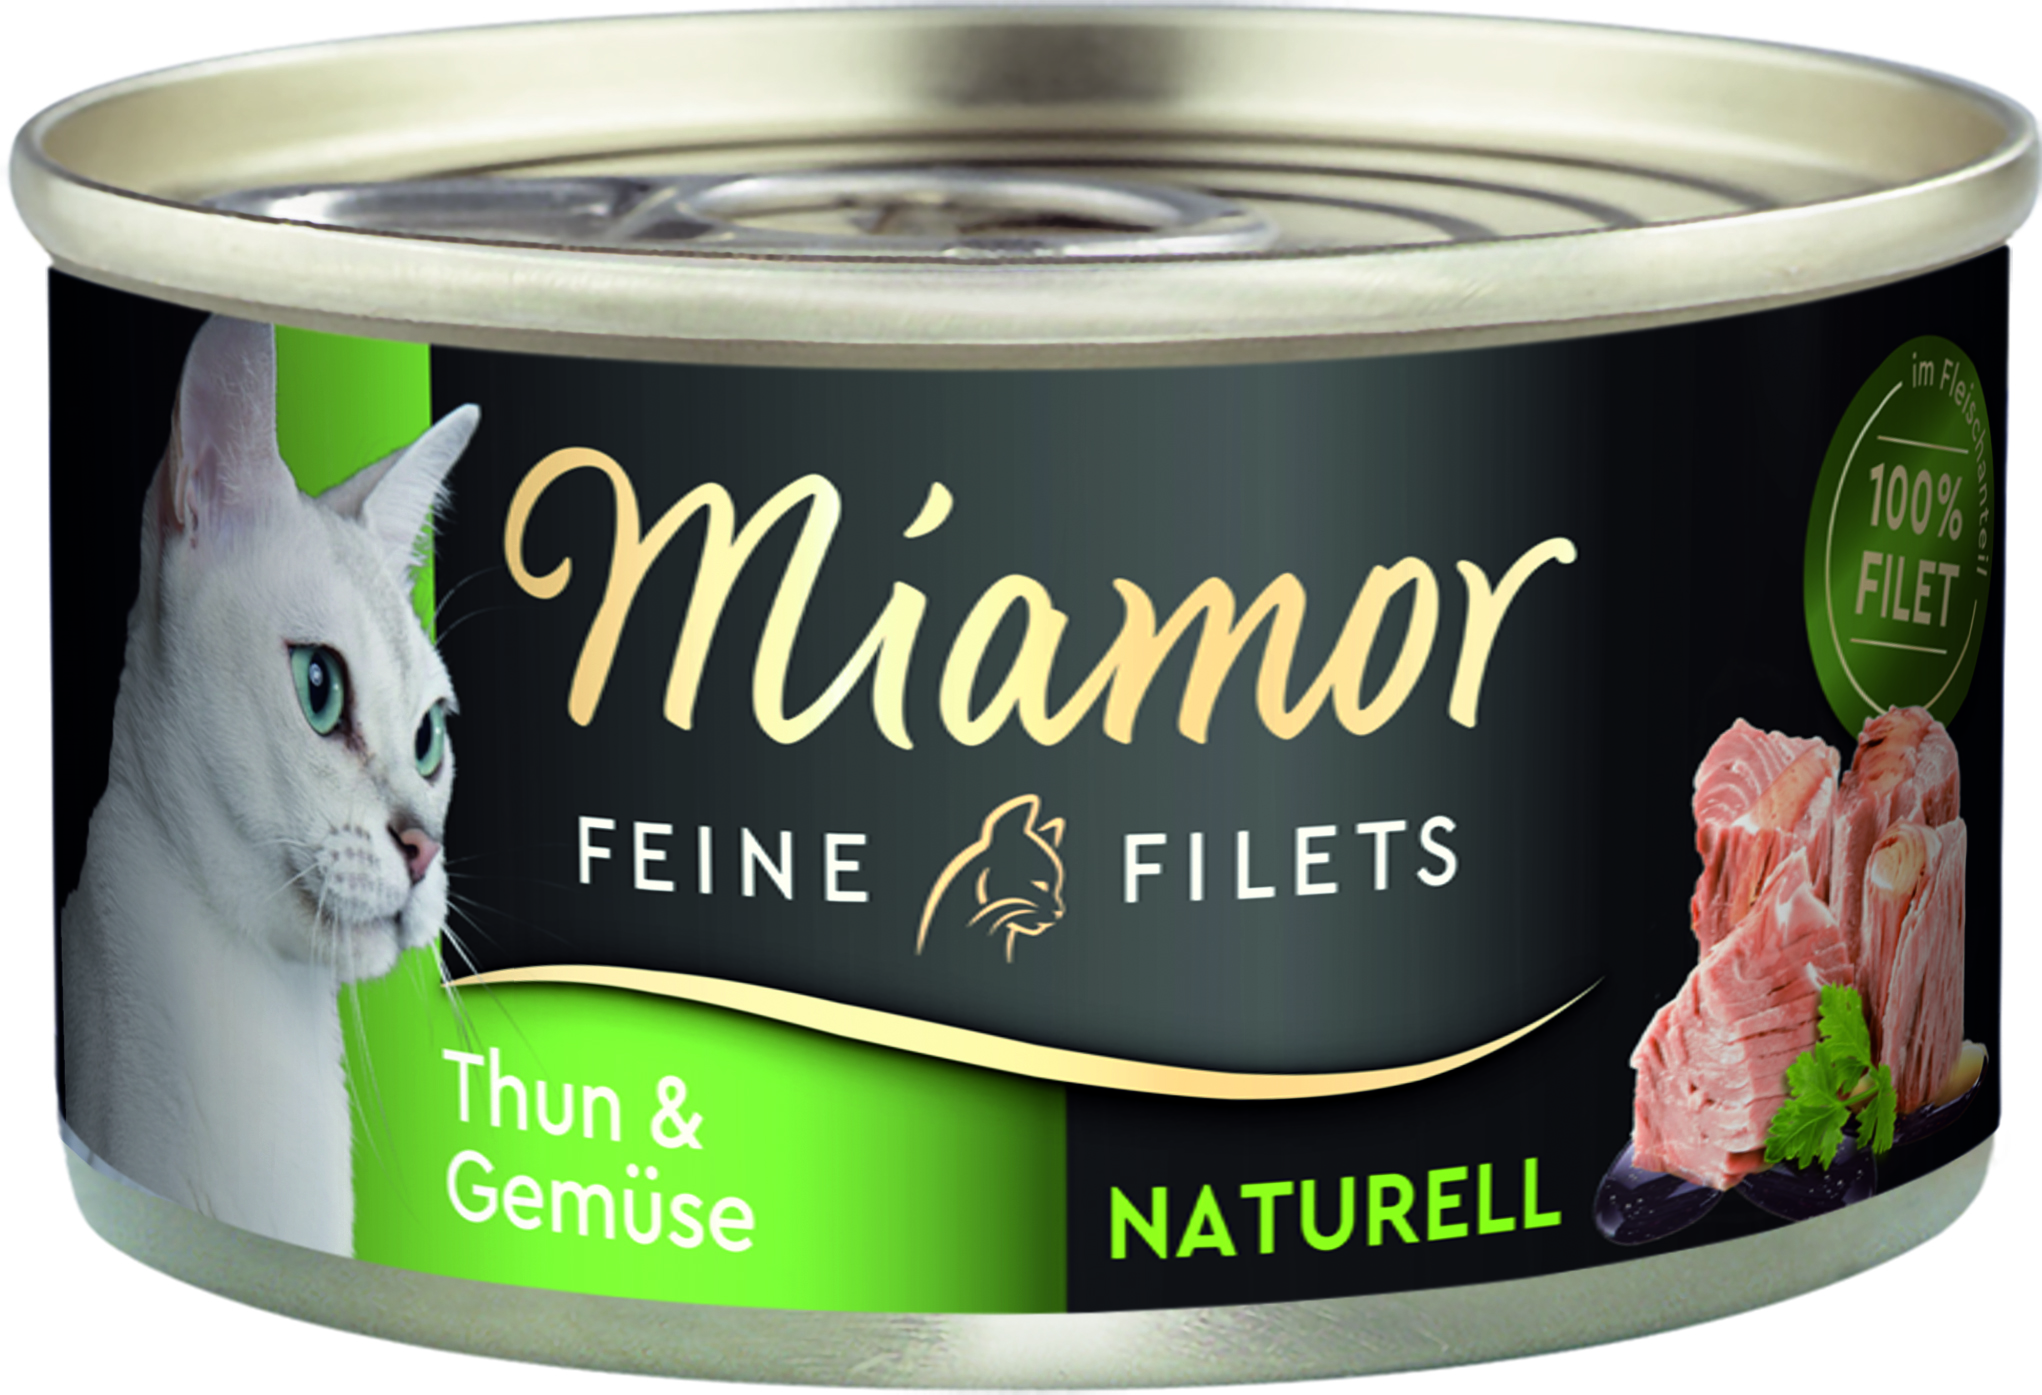 Miamor Feine Filets Naturell Thun & Gemüse 80g